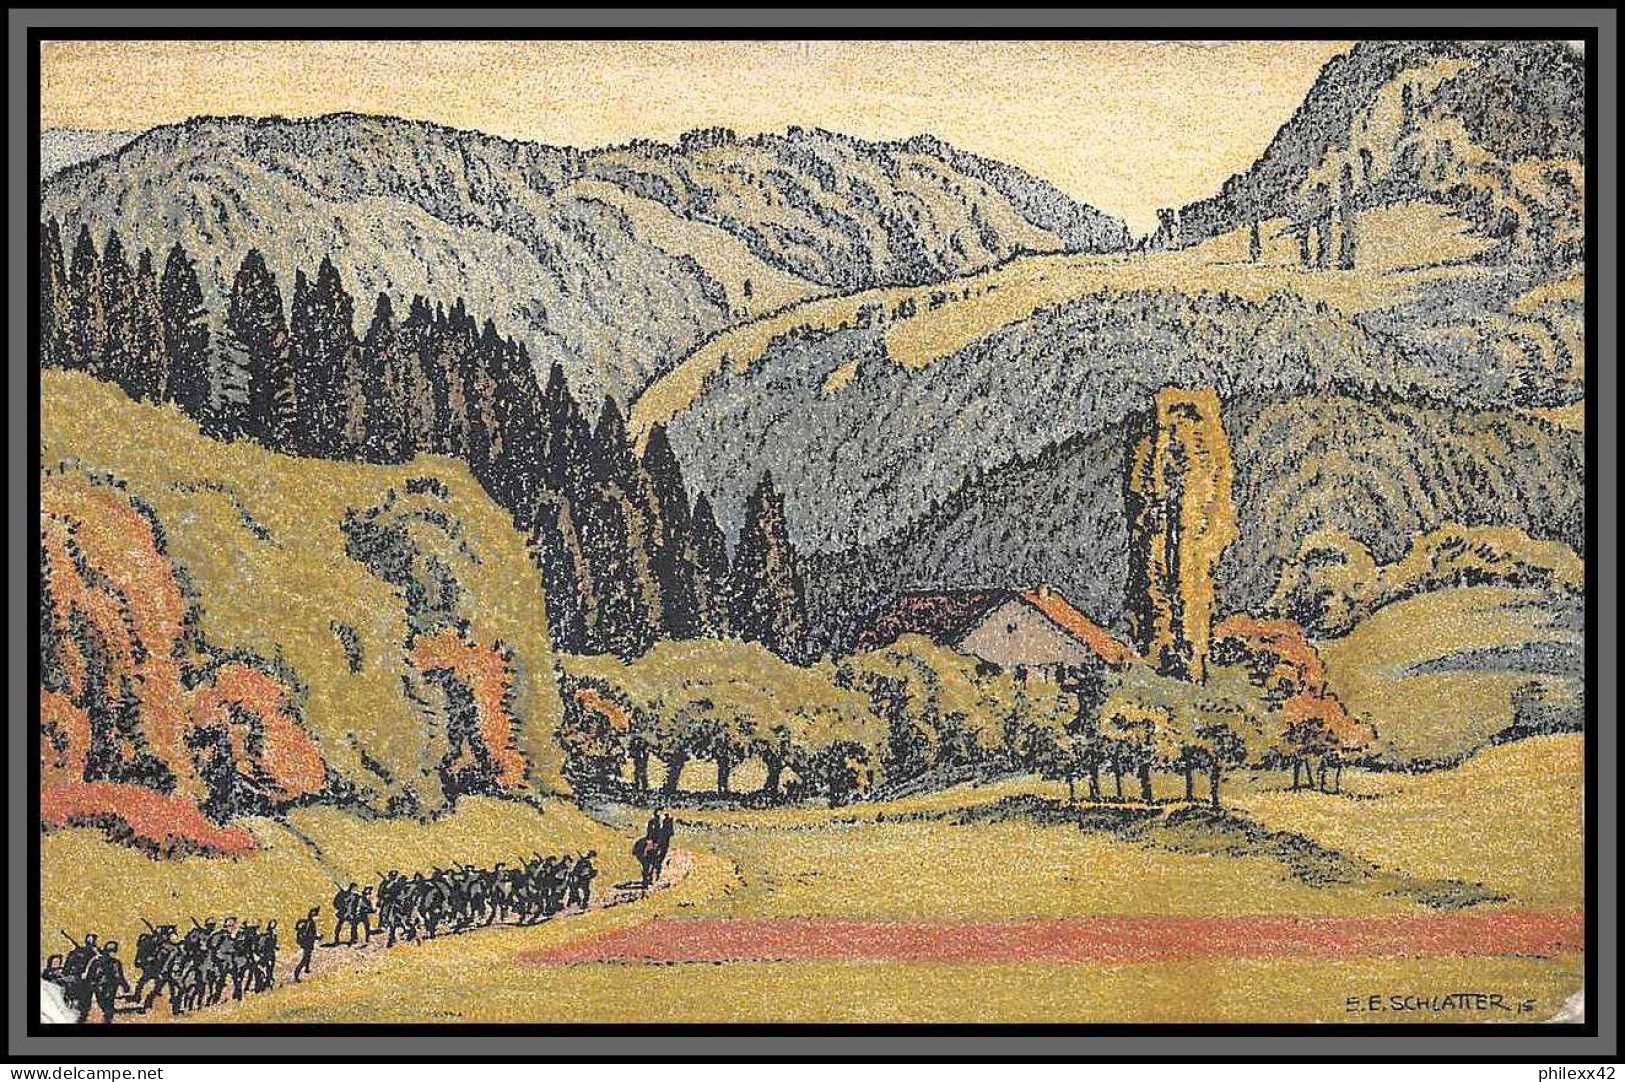 11334 Porrentruy 1925 Pour Sables D'ollone Carte Postale Pro Juventute Vallée Du Jura Près De Fontenais Postcard Suisse  - Covers & Documents